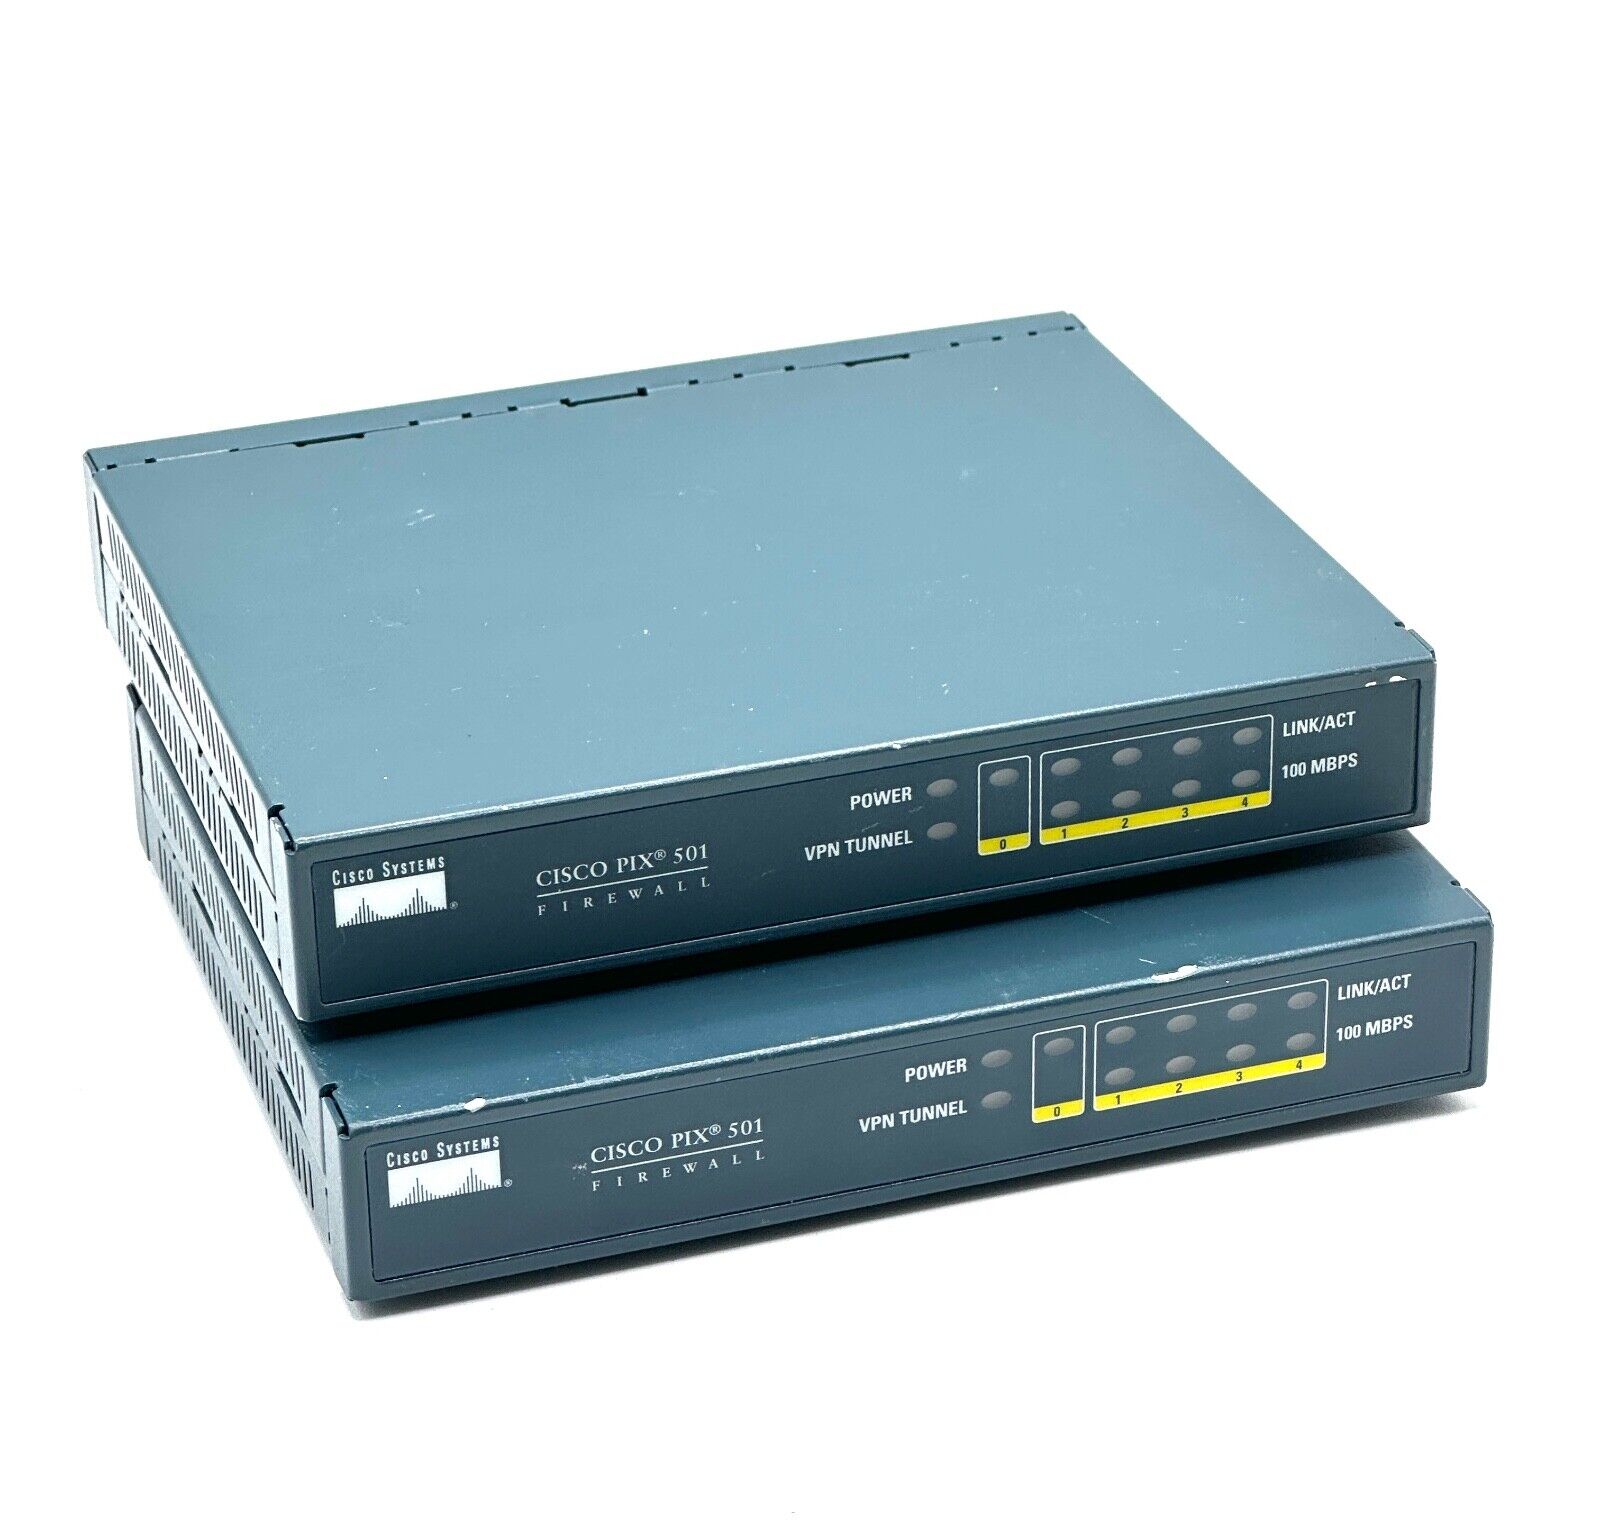 CISCO Pix 501 Series Firewall 47-10539-01 - LOT OF 2 - NO POWER ADAPTER